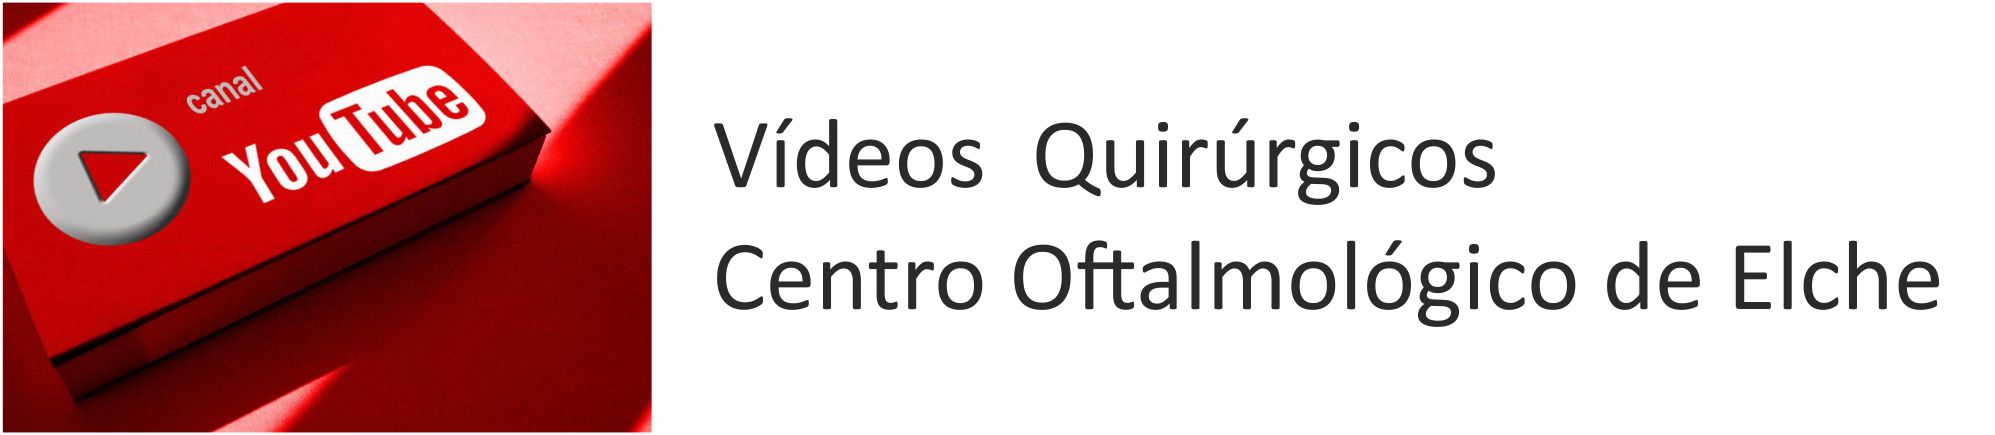 Vídeos quirúrgicos Alicante – canal youtube del Centro Oftalmológico de Elche